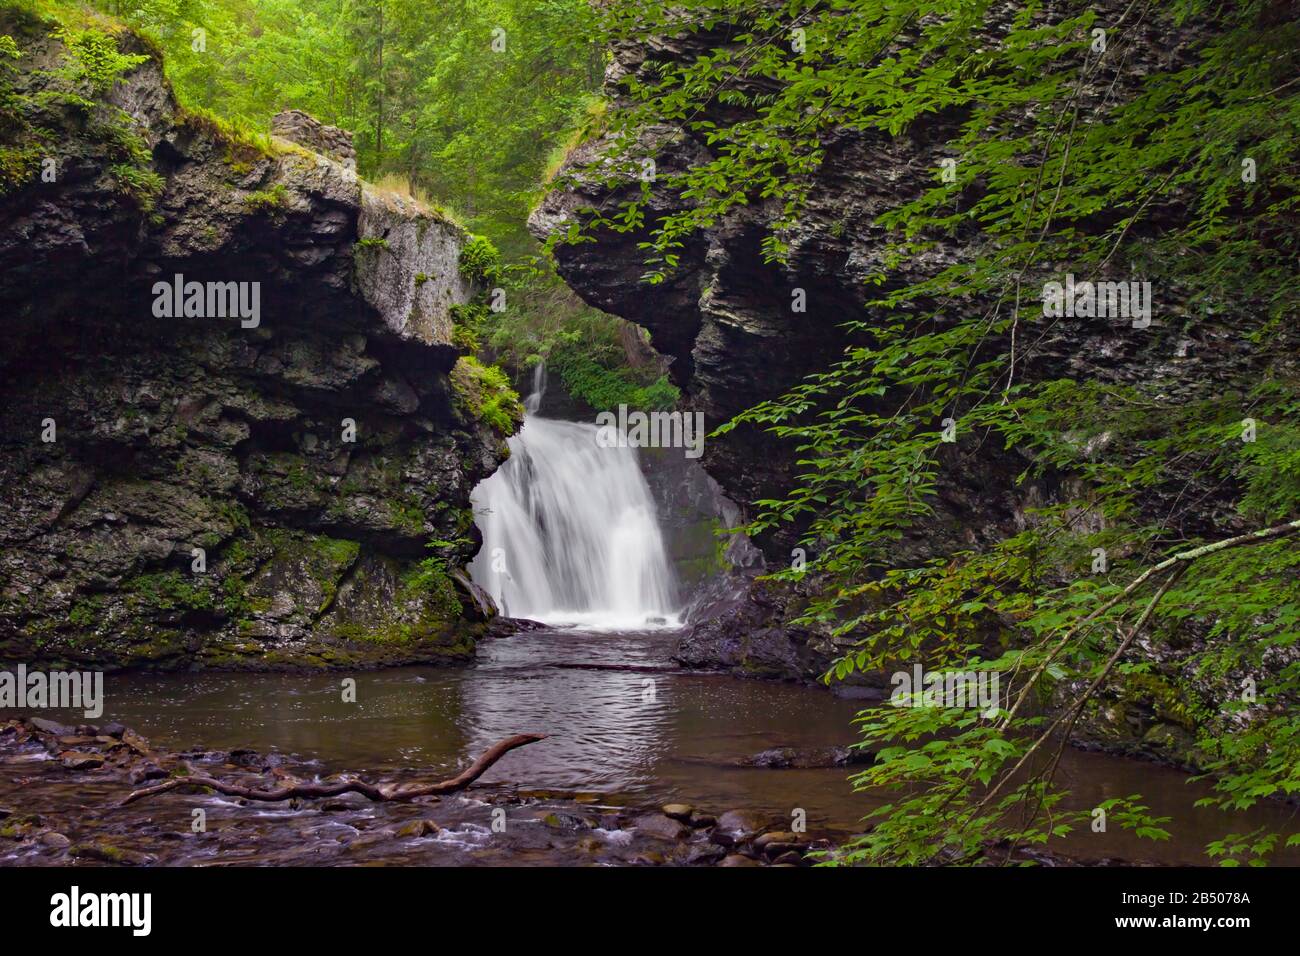 Marshall's Falls am Marshalls Creek in den Pocono Mountains von Pennsylvania durchfließen eine östliche Hemlock-Schlucht. Stockfoto